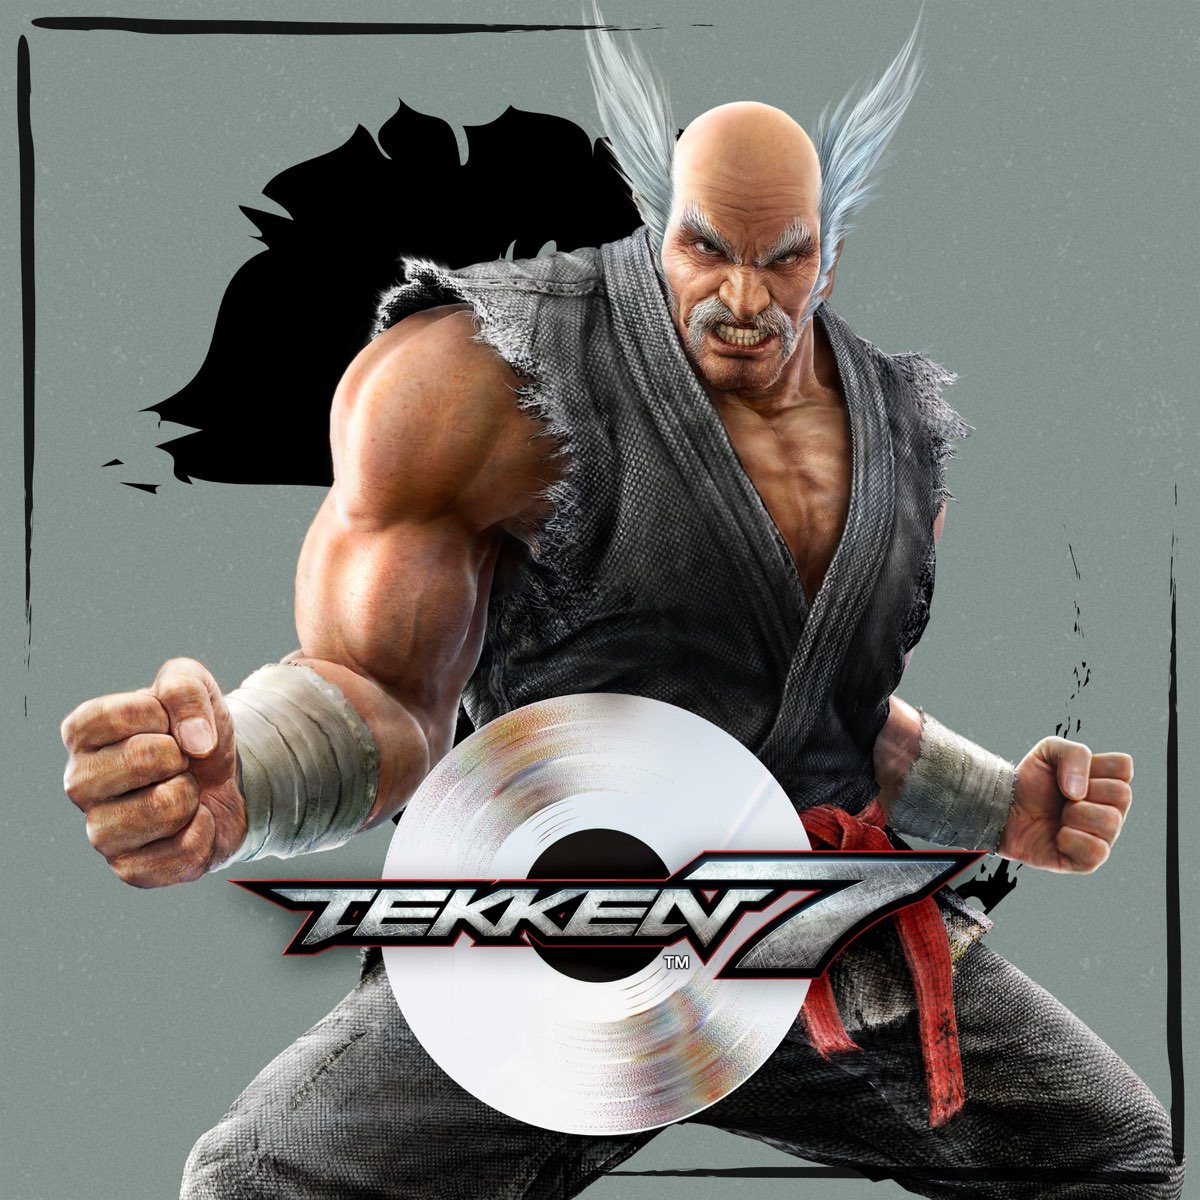 Tekken 7 Original Game Soundtrack By Namco Sounds On Apple Music